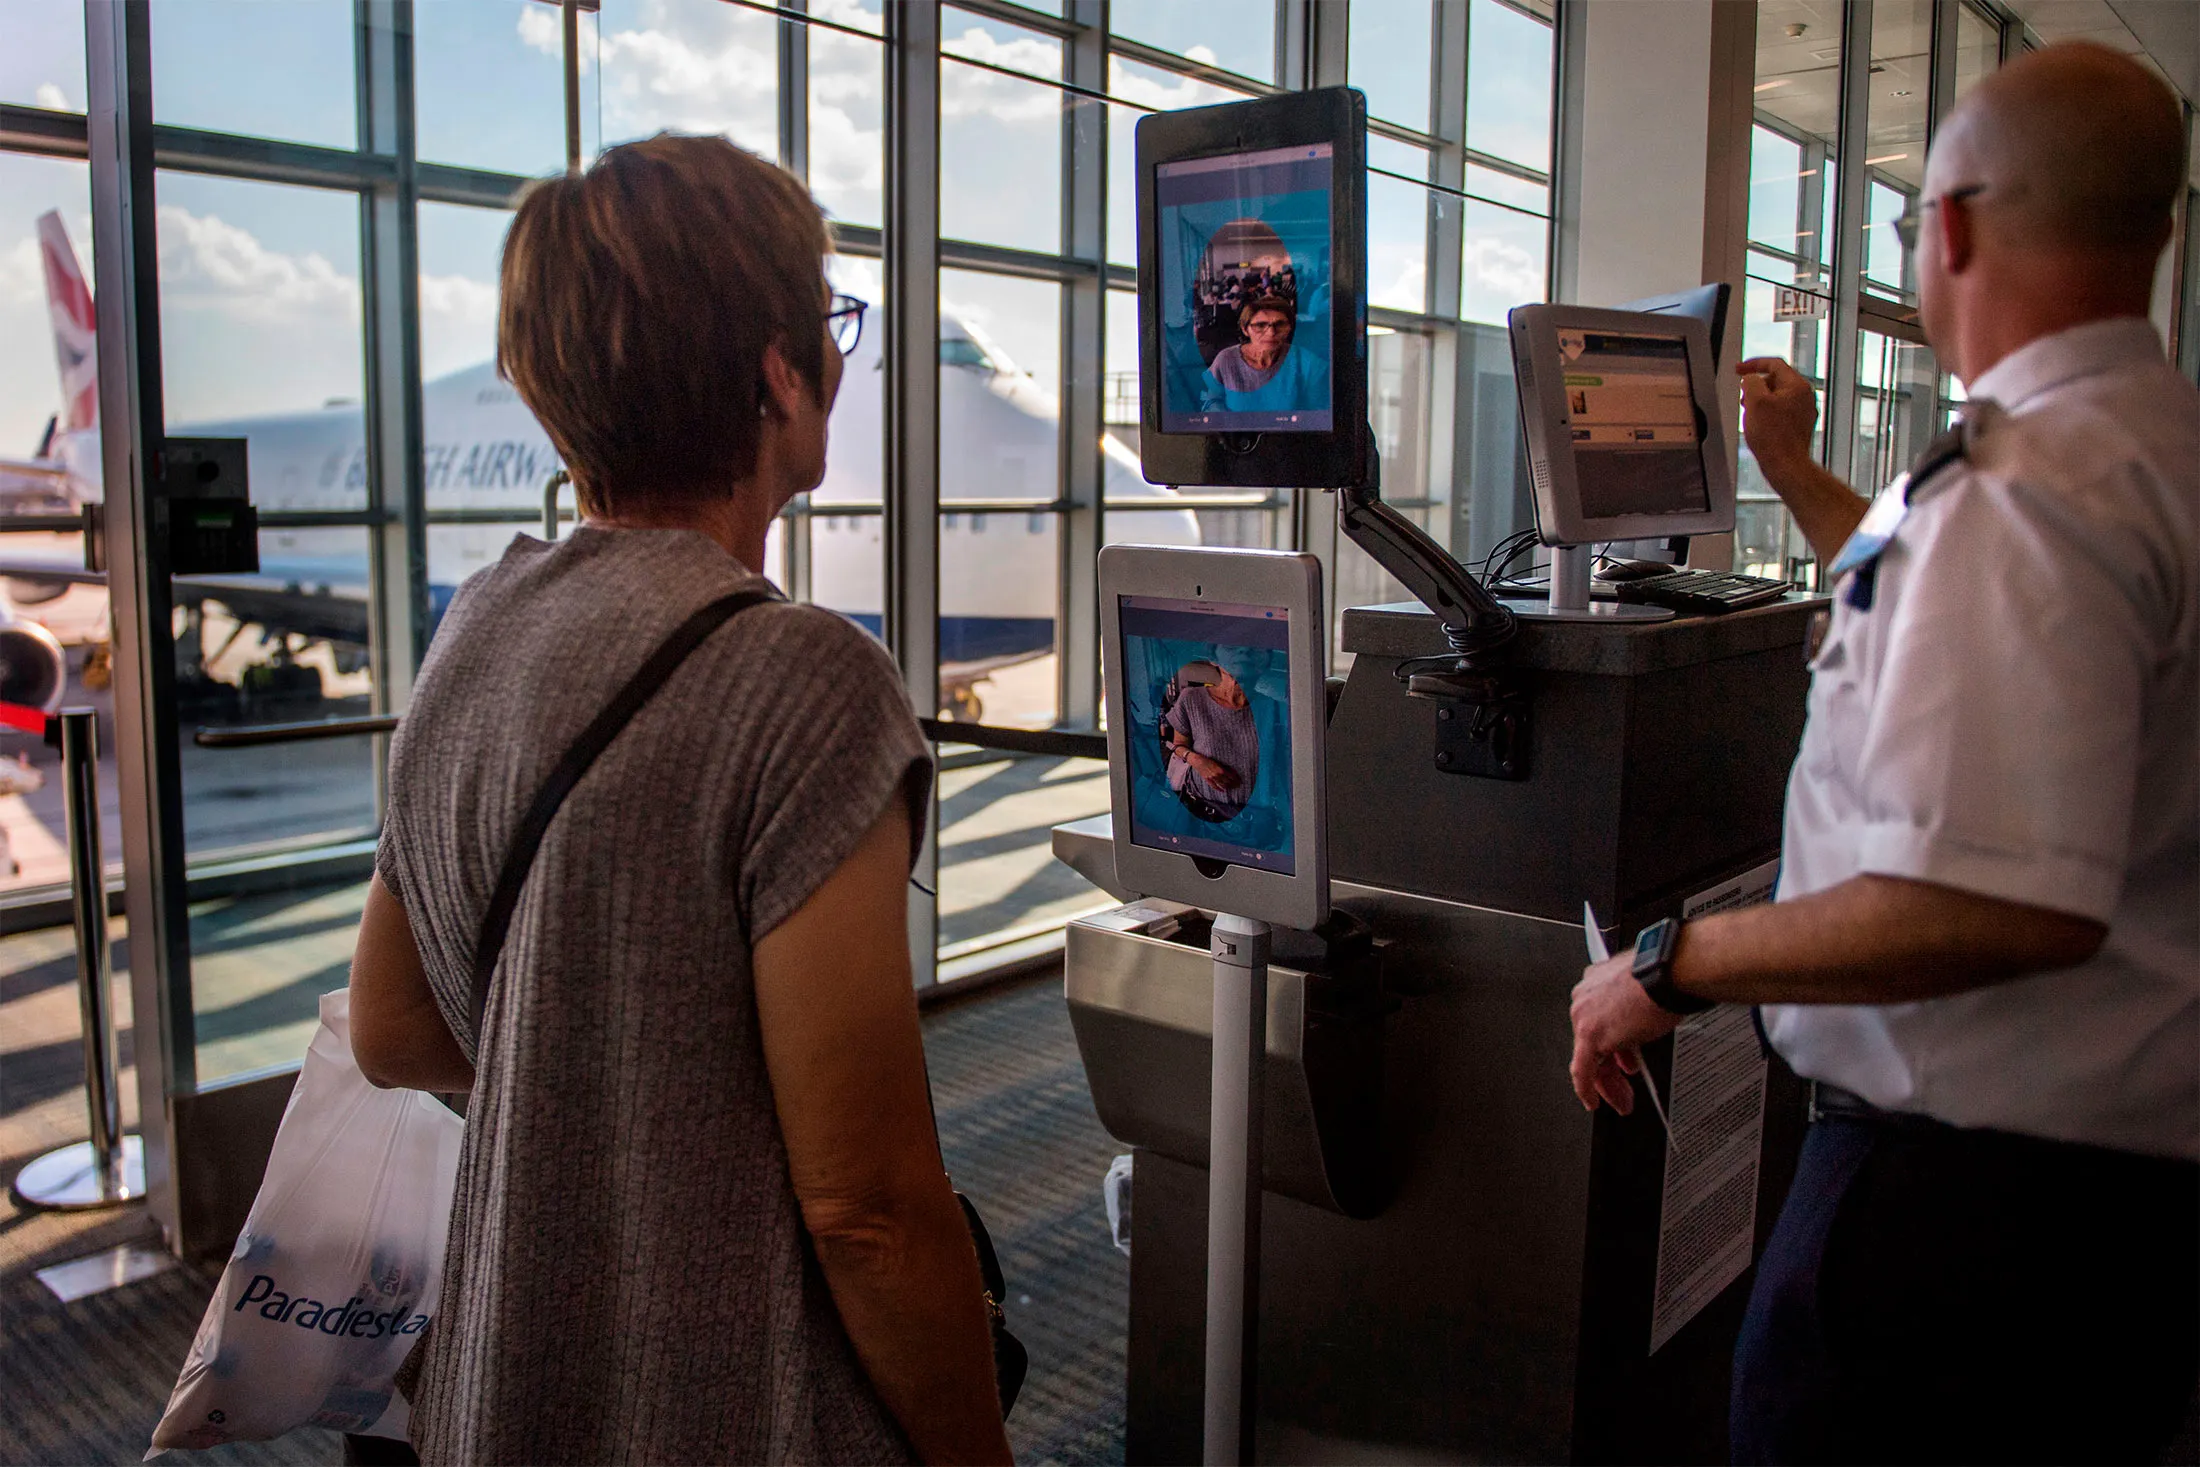 ABD Senatosu havaalanlarında yüz tanıma sistemini yasaklayabilir